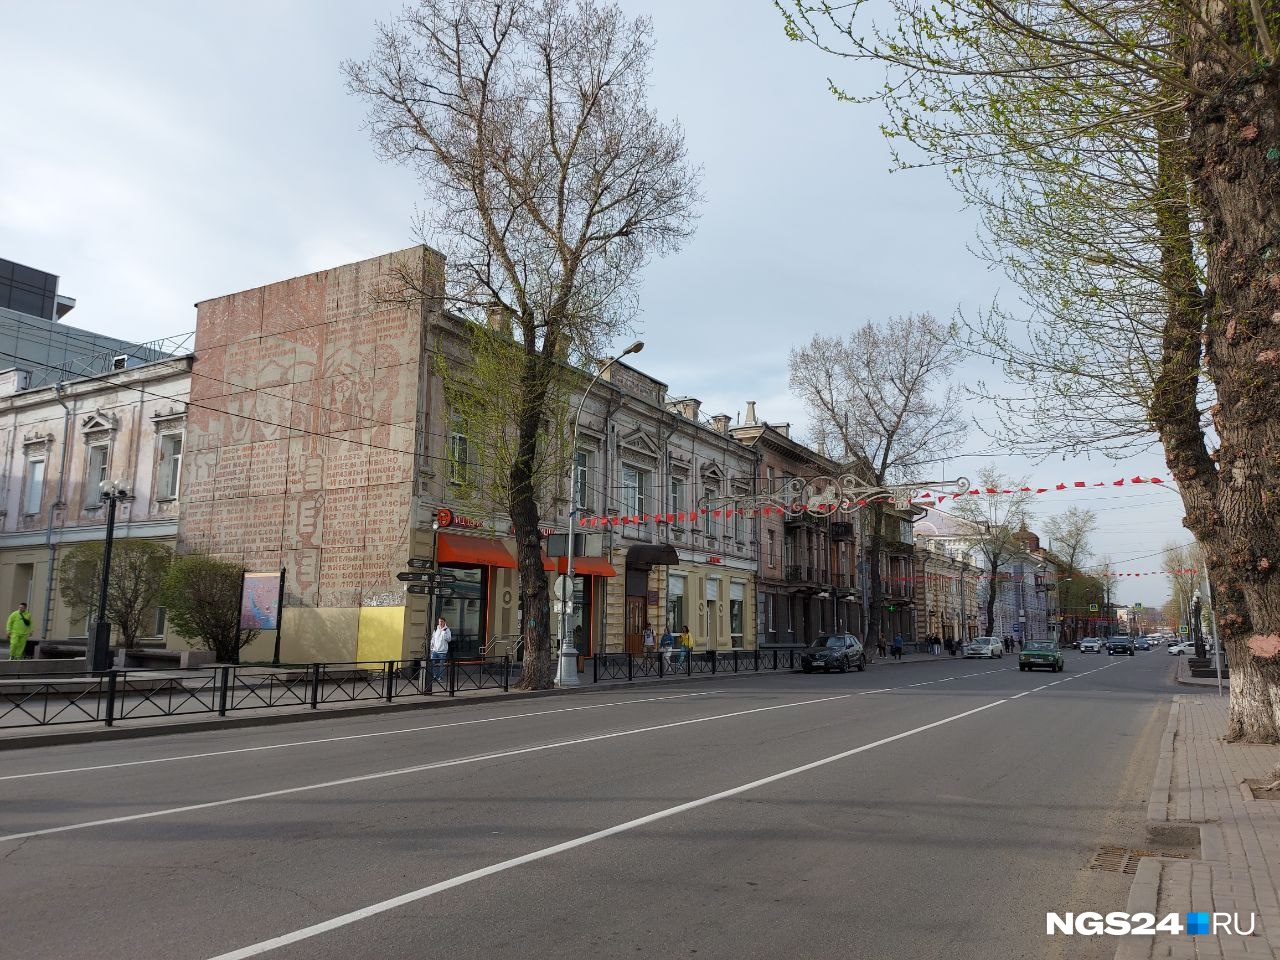 Почти все здания на главной улице Иркутска были построены в XIX или начале XX века